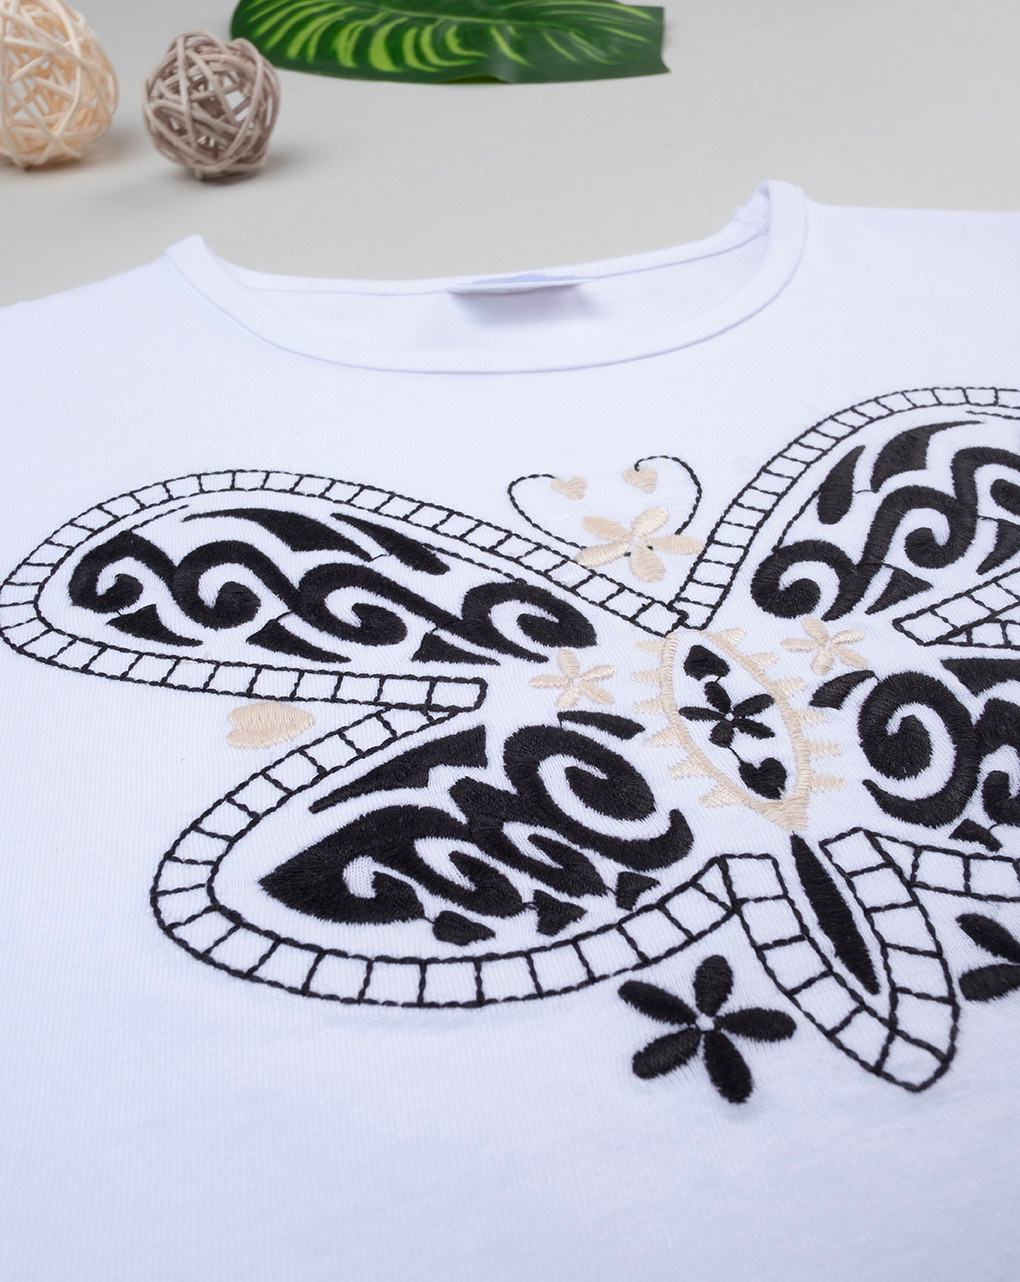 παιδικό t-shirt λευκό με πεταλούδα για κορίτσι - Prénatal